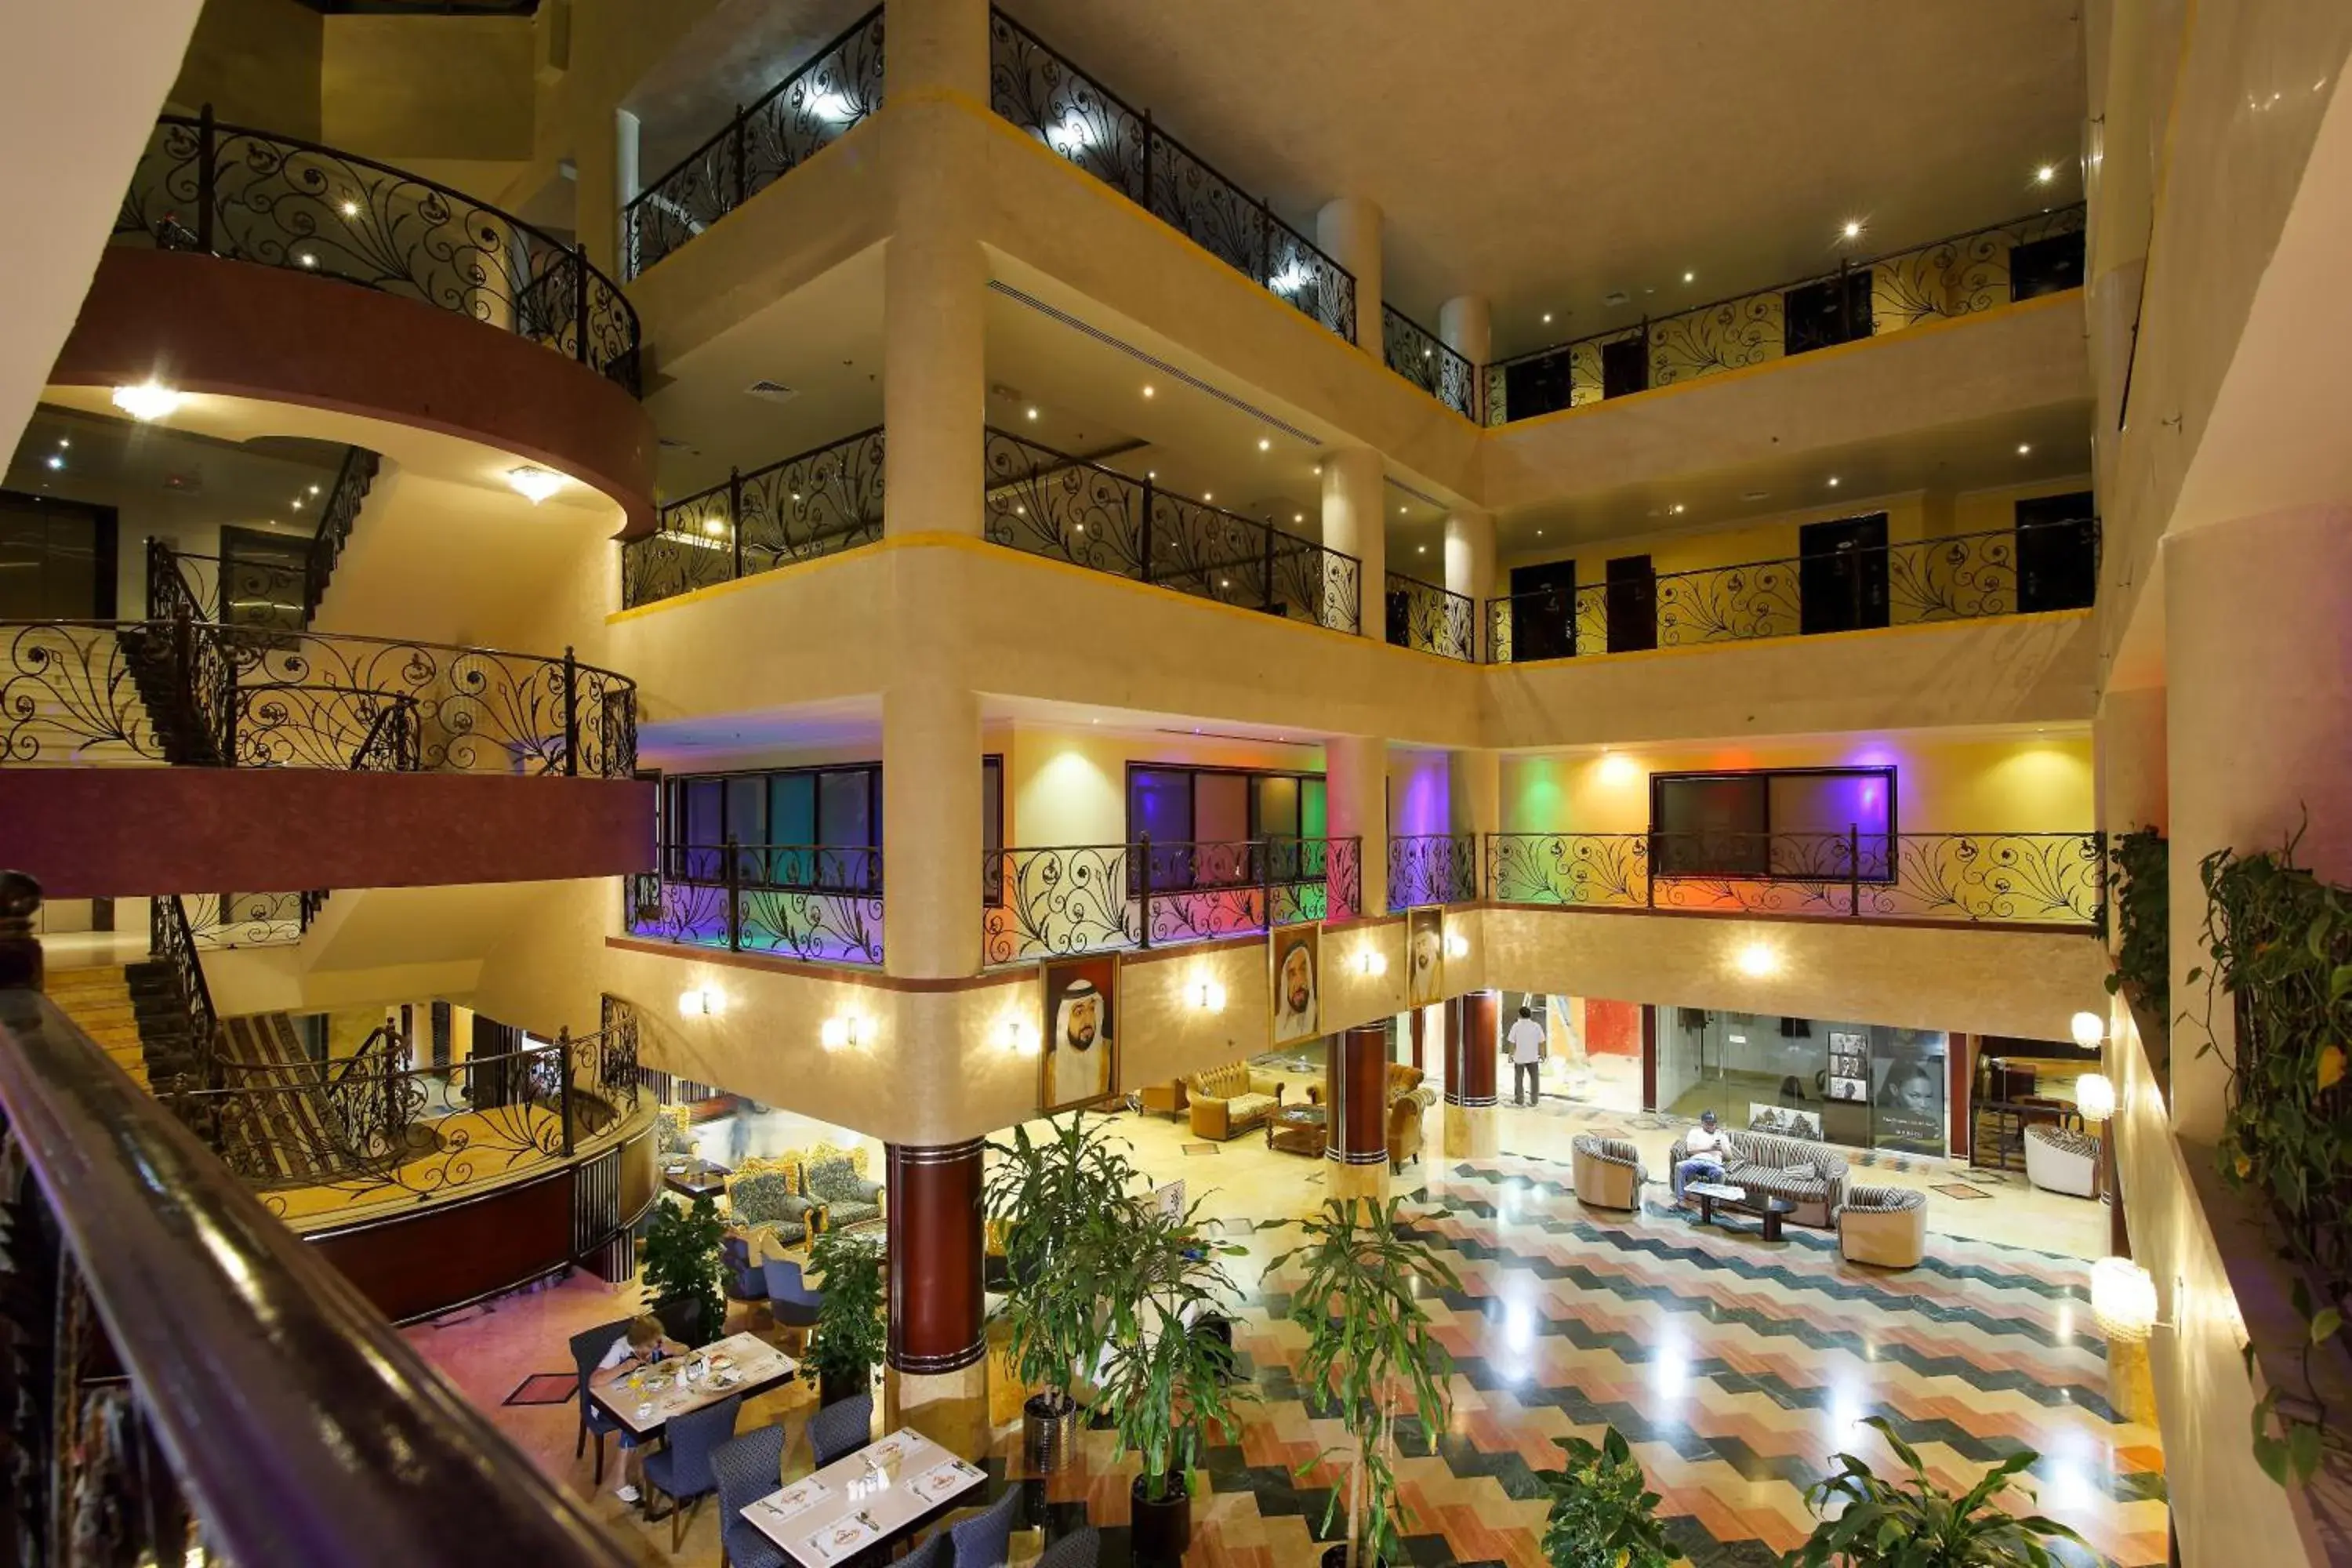 Lobby or reception in Al Bustan Hotel